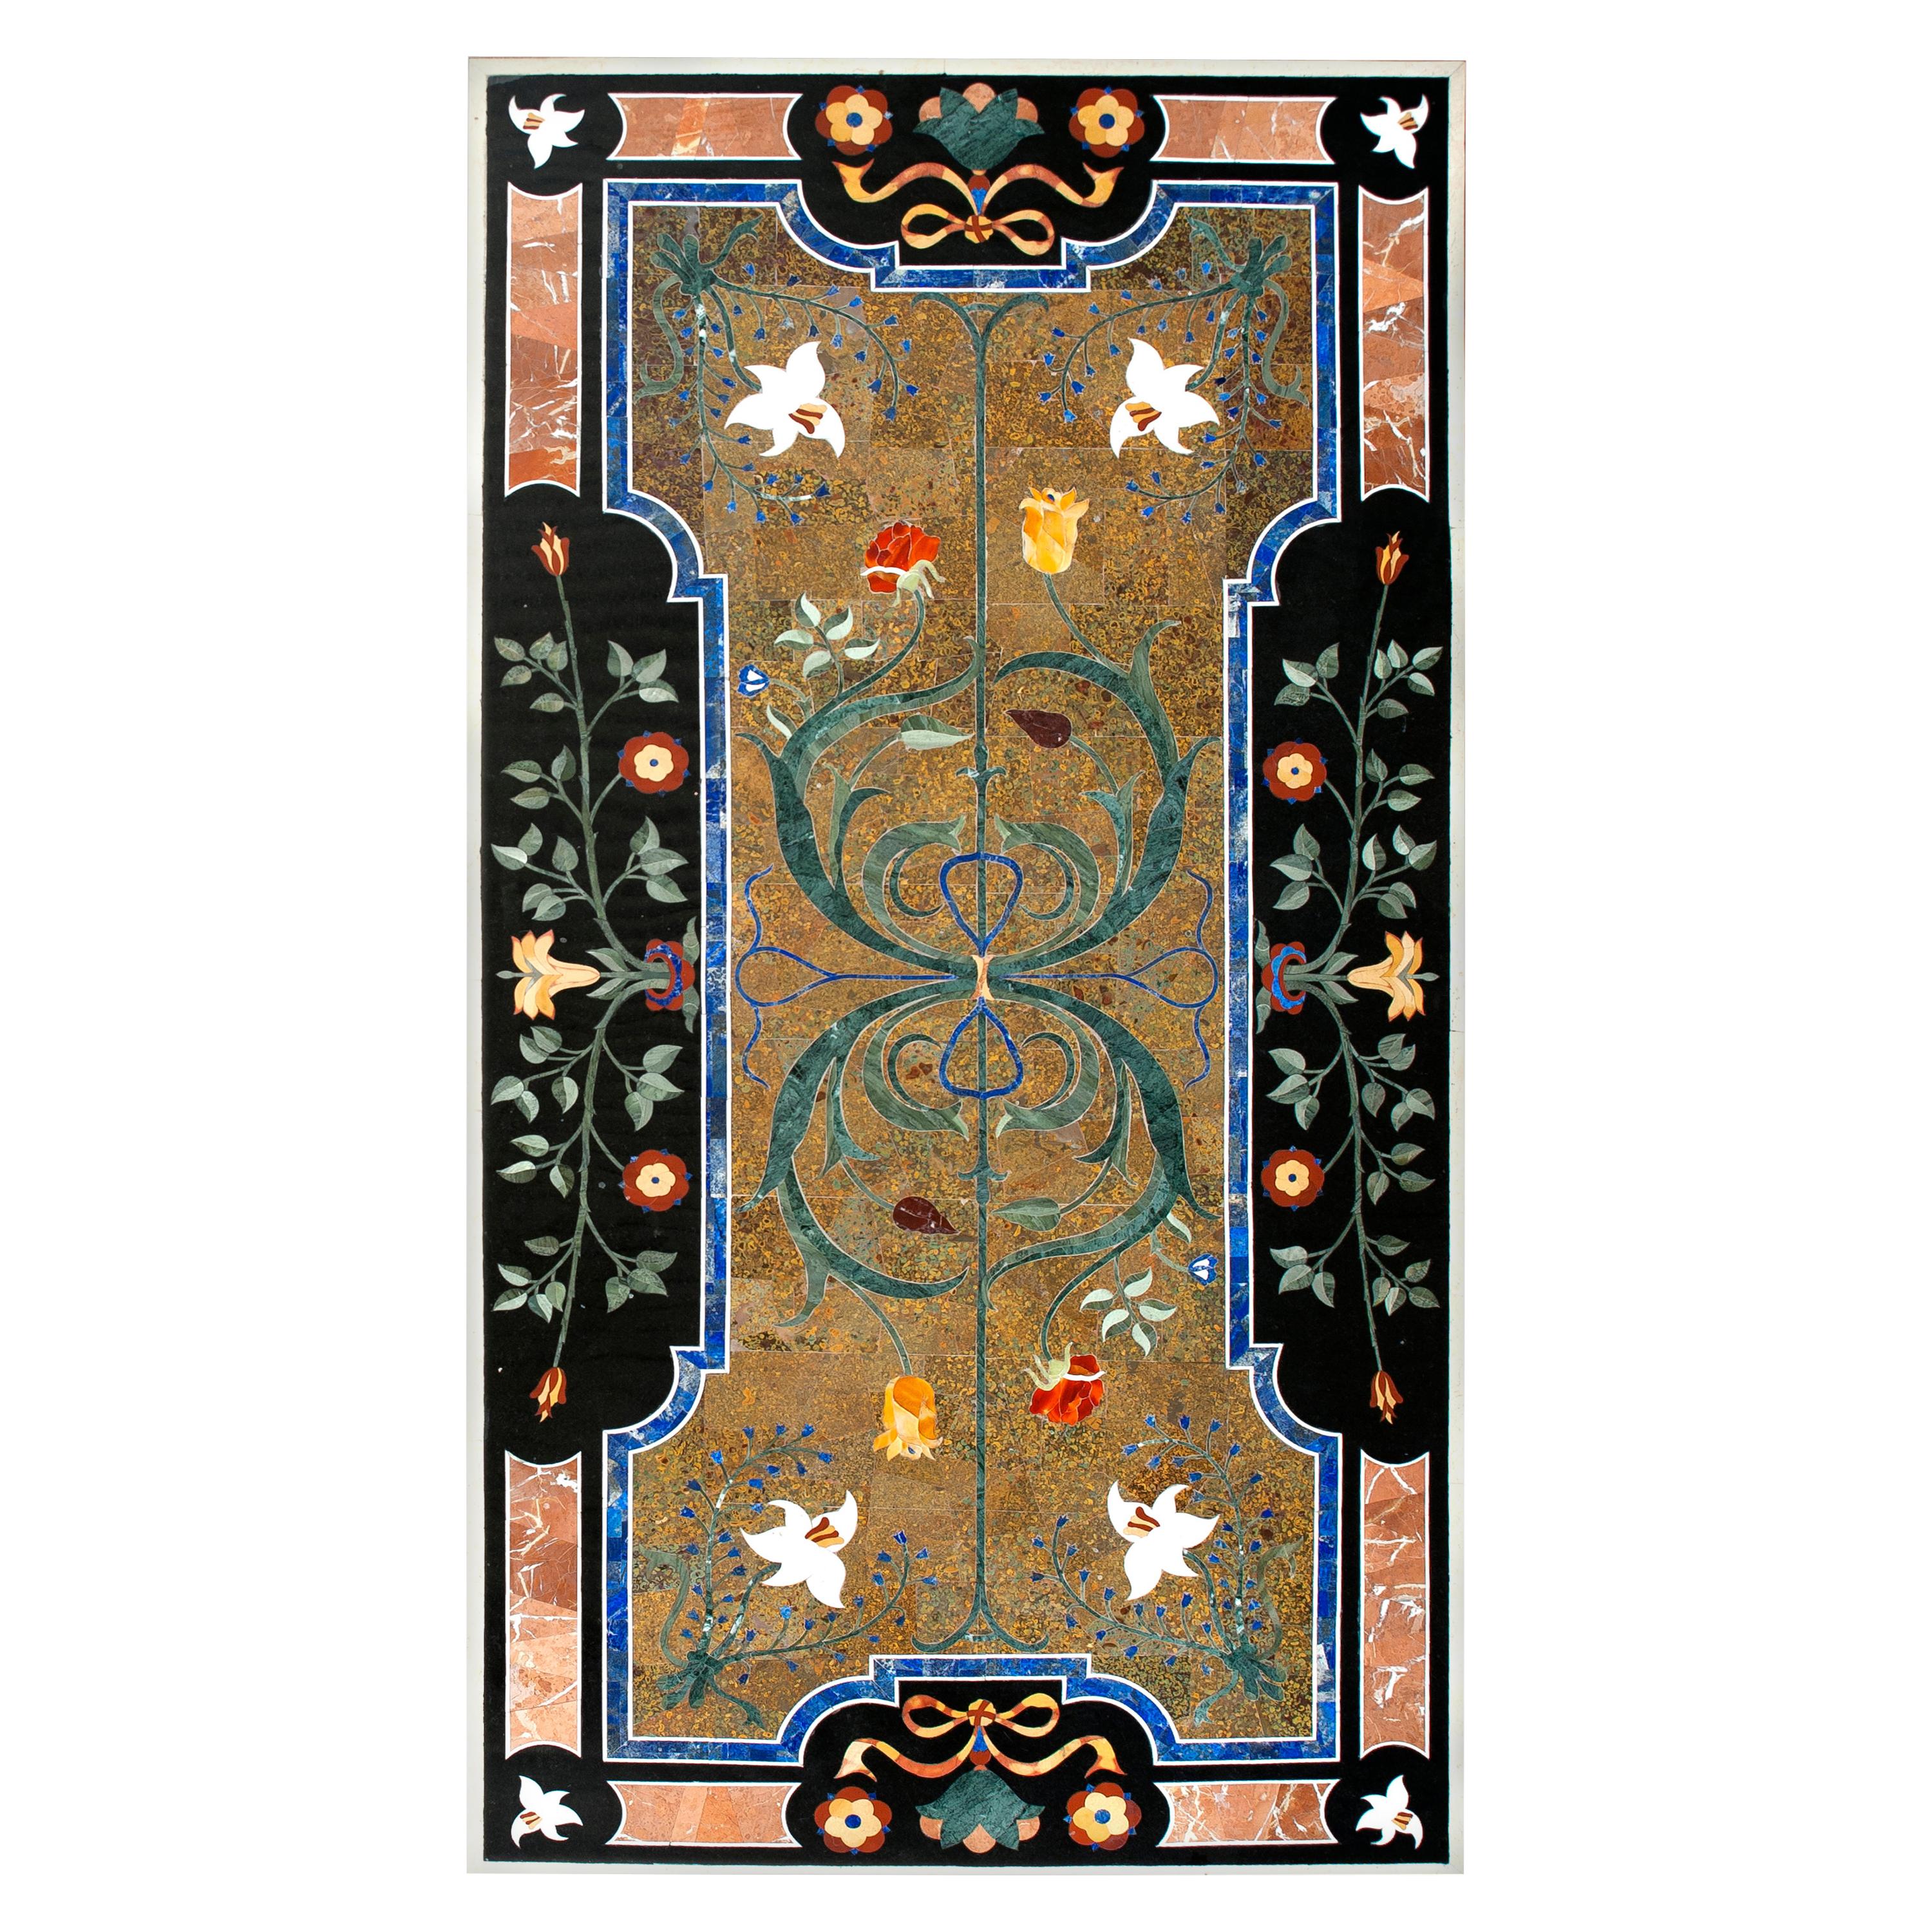 Pietra Dura oder Hartgestein Tischplatte